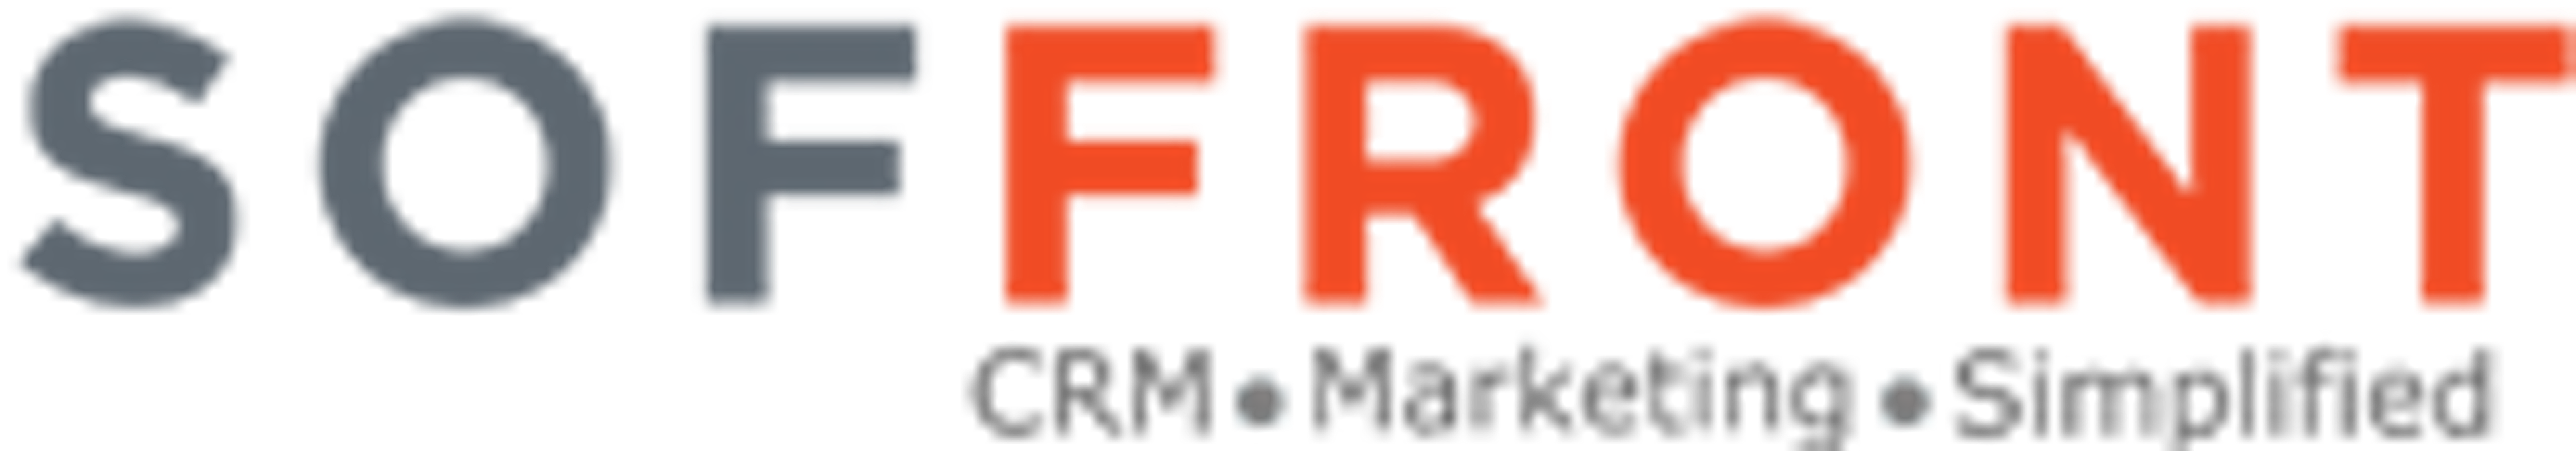 Soffront CRM Logo